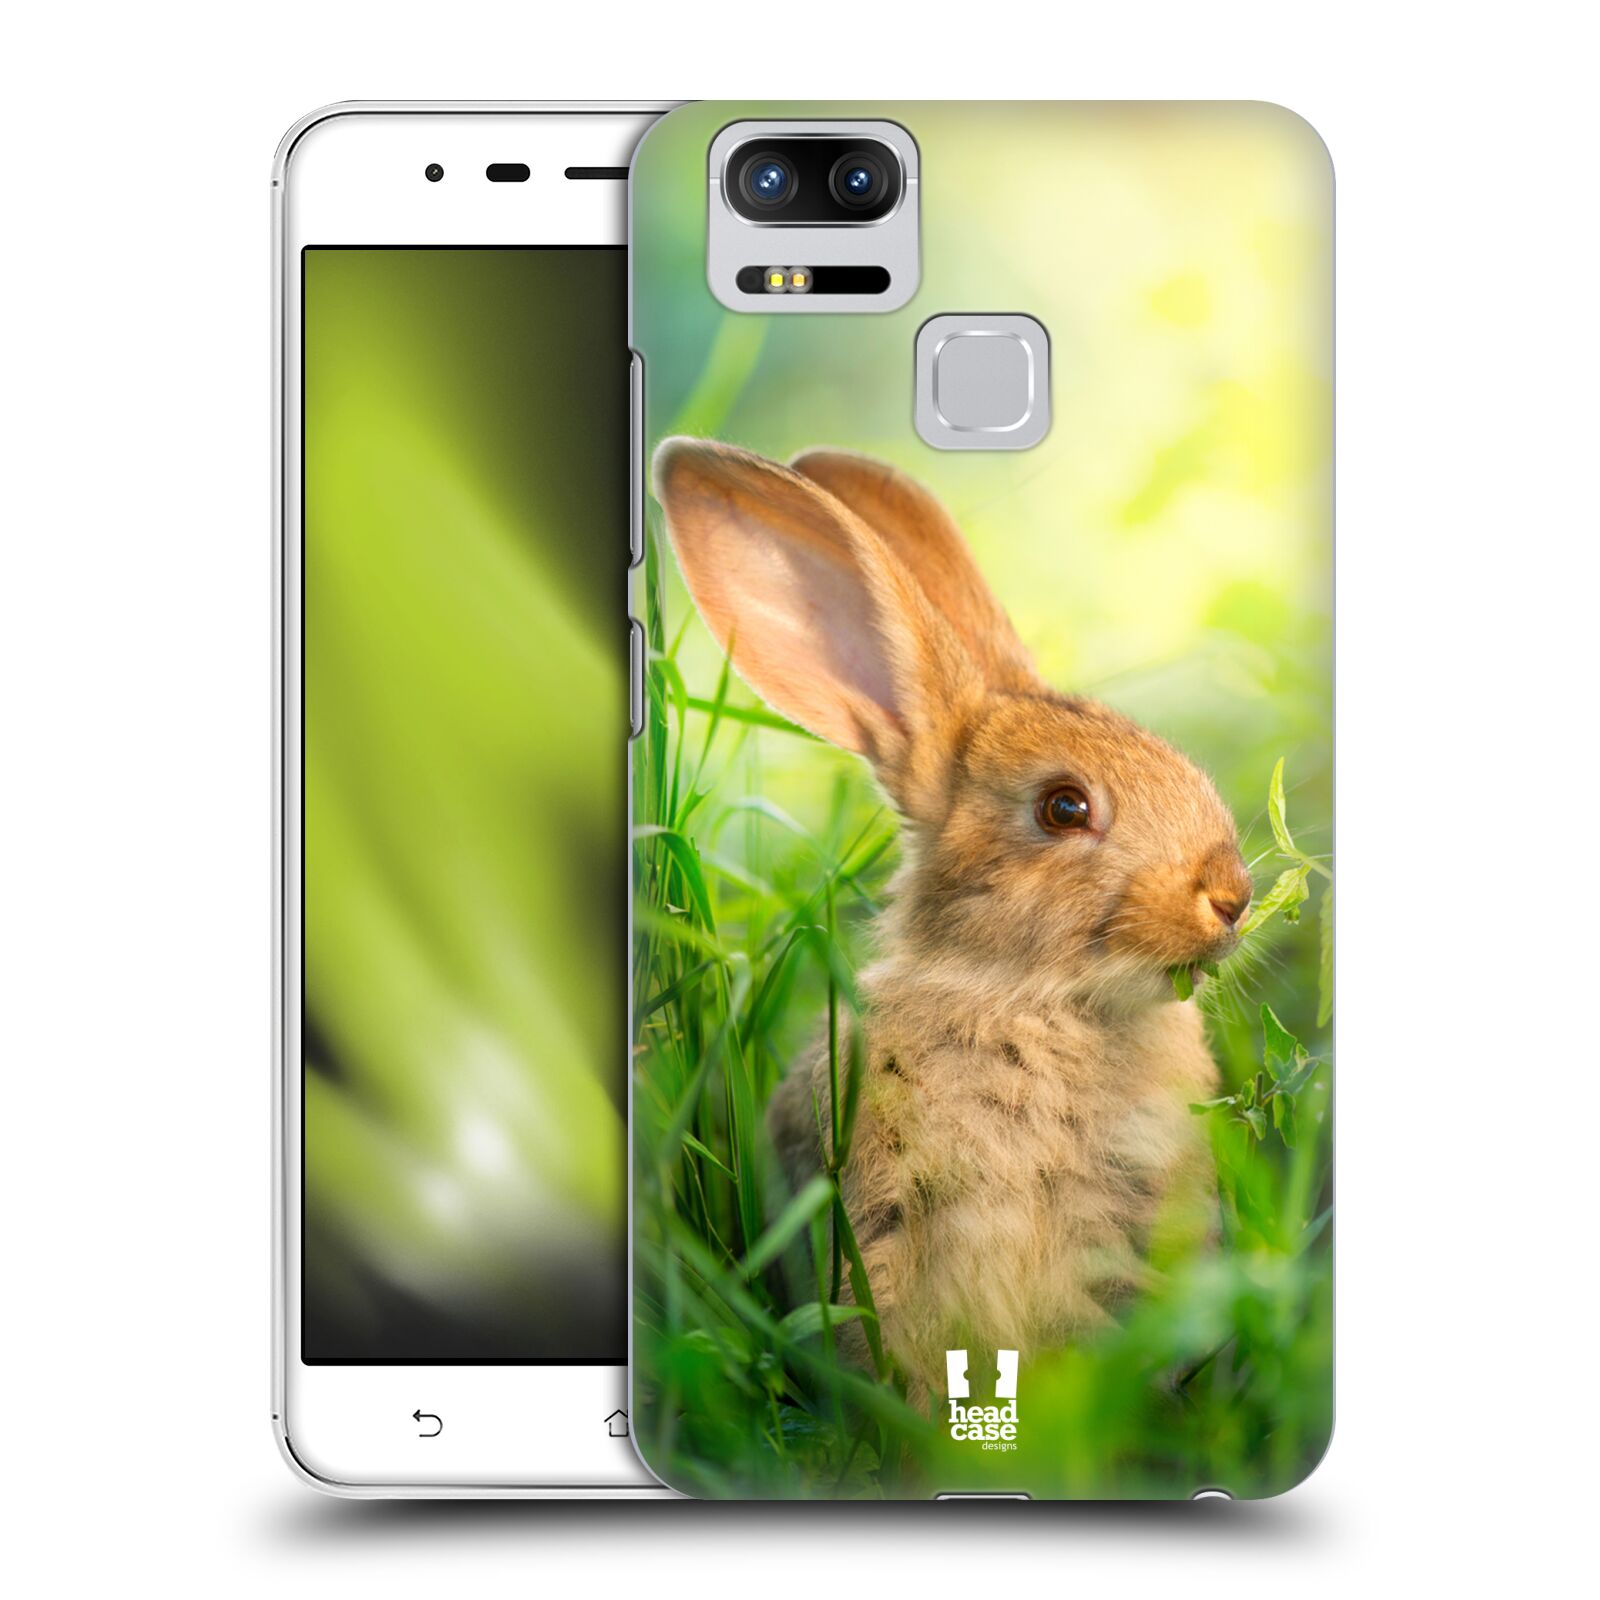 HEAD CASE plastový obal na mobil Asus Zenfone 3 Zoom ZE553KL vzor Divočina, Divoký život a zvířata foto ZAJÍČEK V TRÁVĚ ZELENÁ